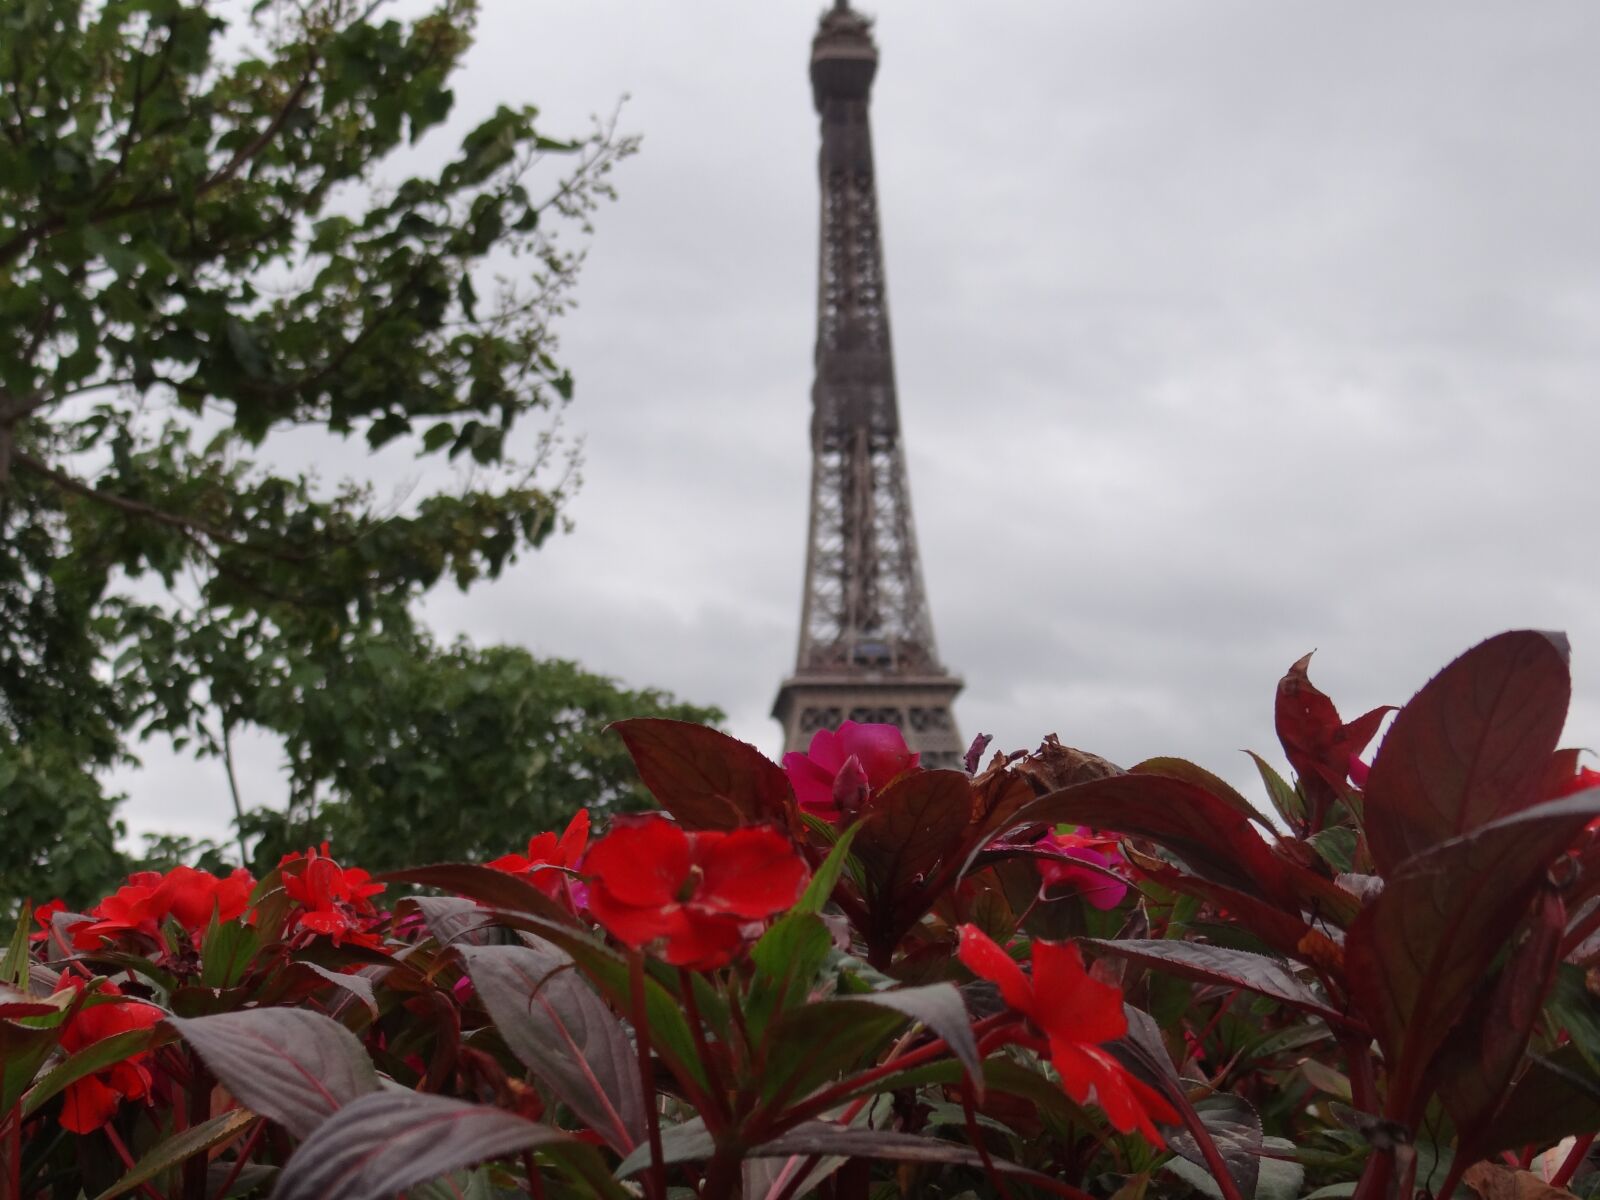 Sony Cyber-shot DSC-HX100V sample photo. Paris en fleurs, paris photography